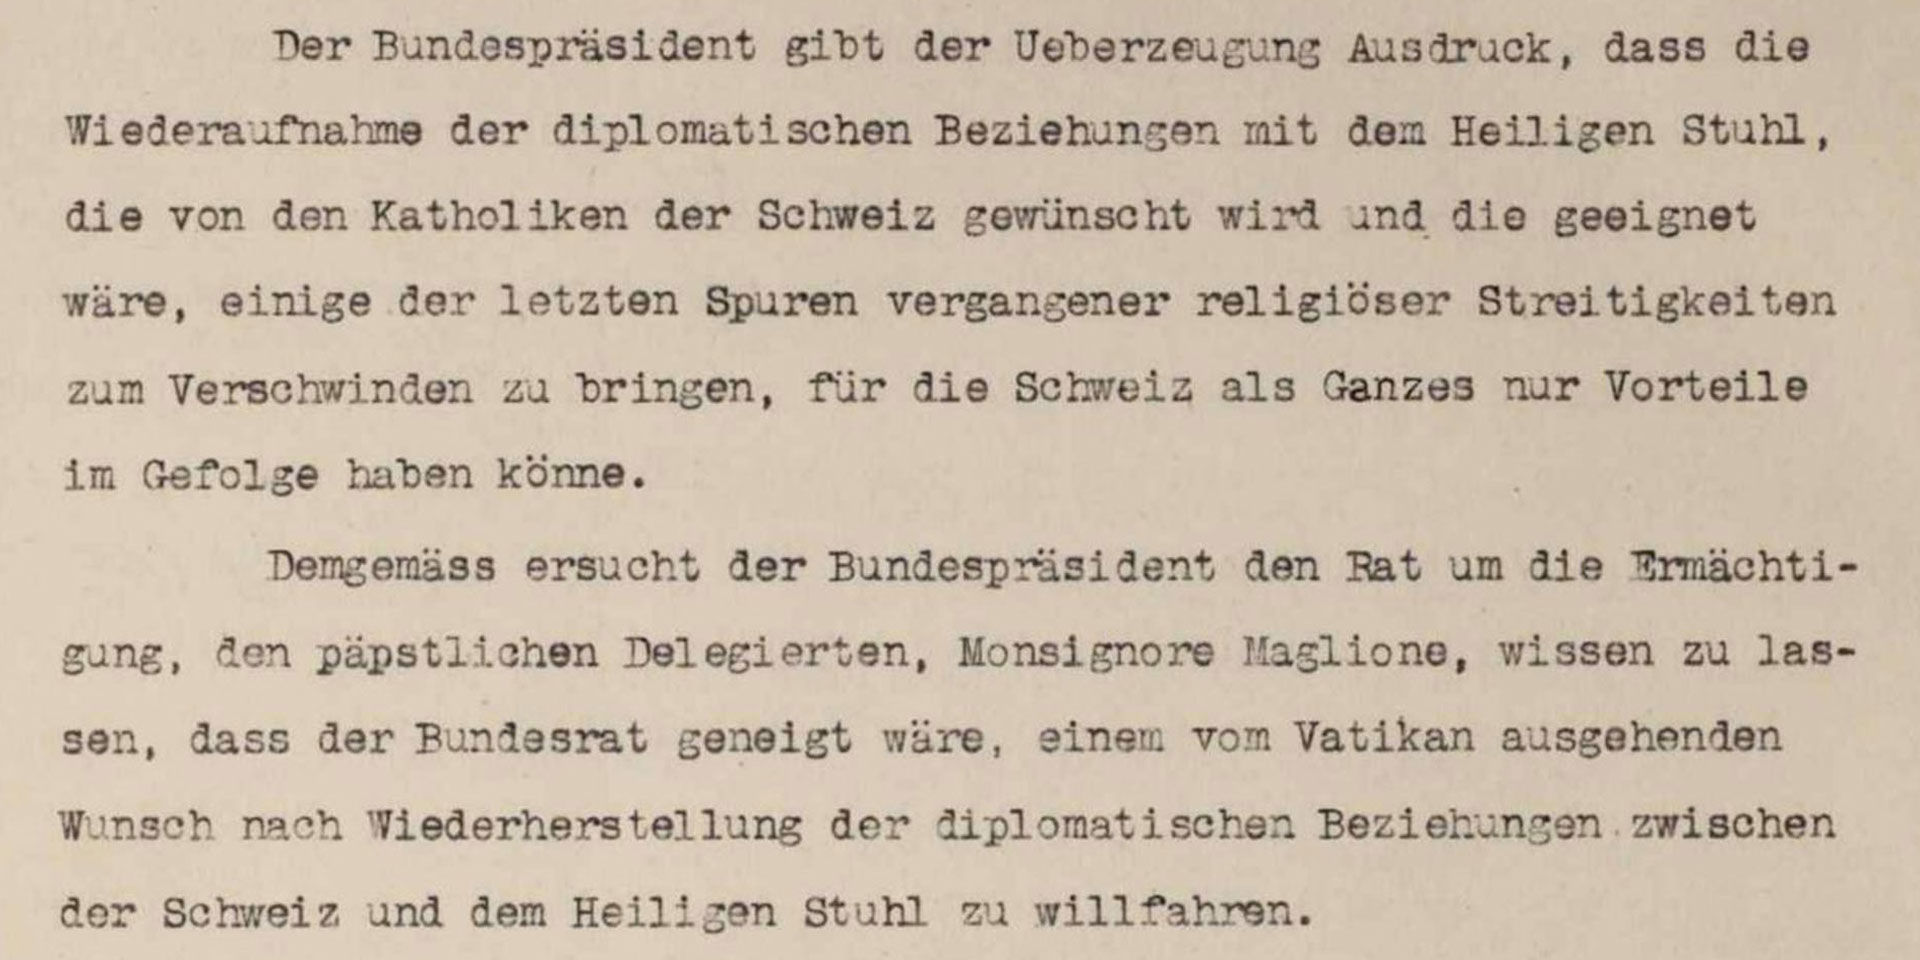 Pagina del verbale della seduta del Consiglio federale del 18 giugno 1920 sulla proposta del presidente della Confederazione Giuseppe Motta di riprendere le relazioni diplomatiche con la Santa Sede.